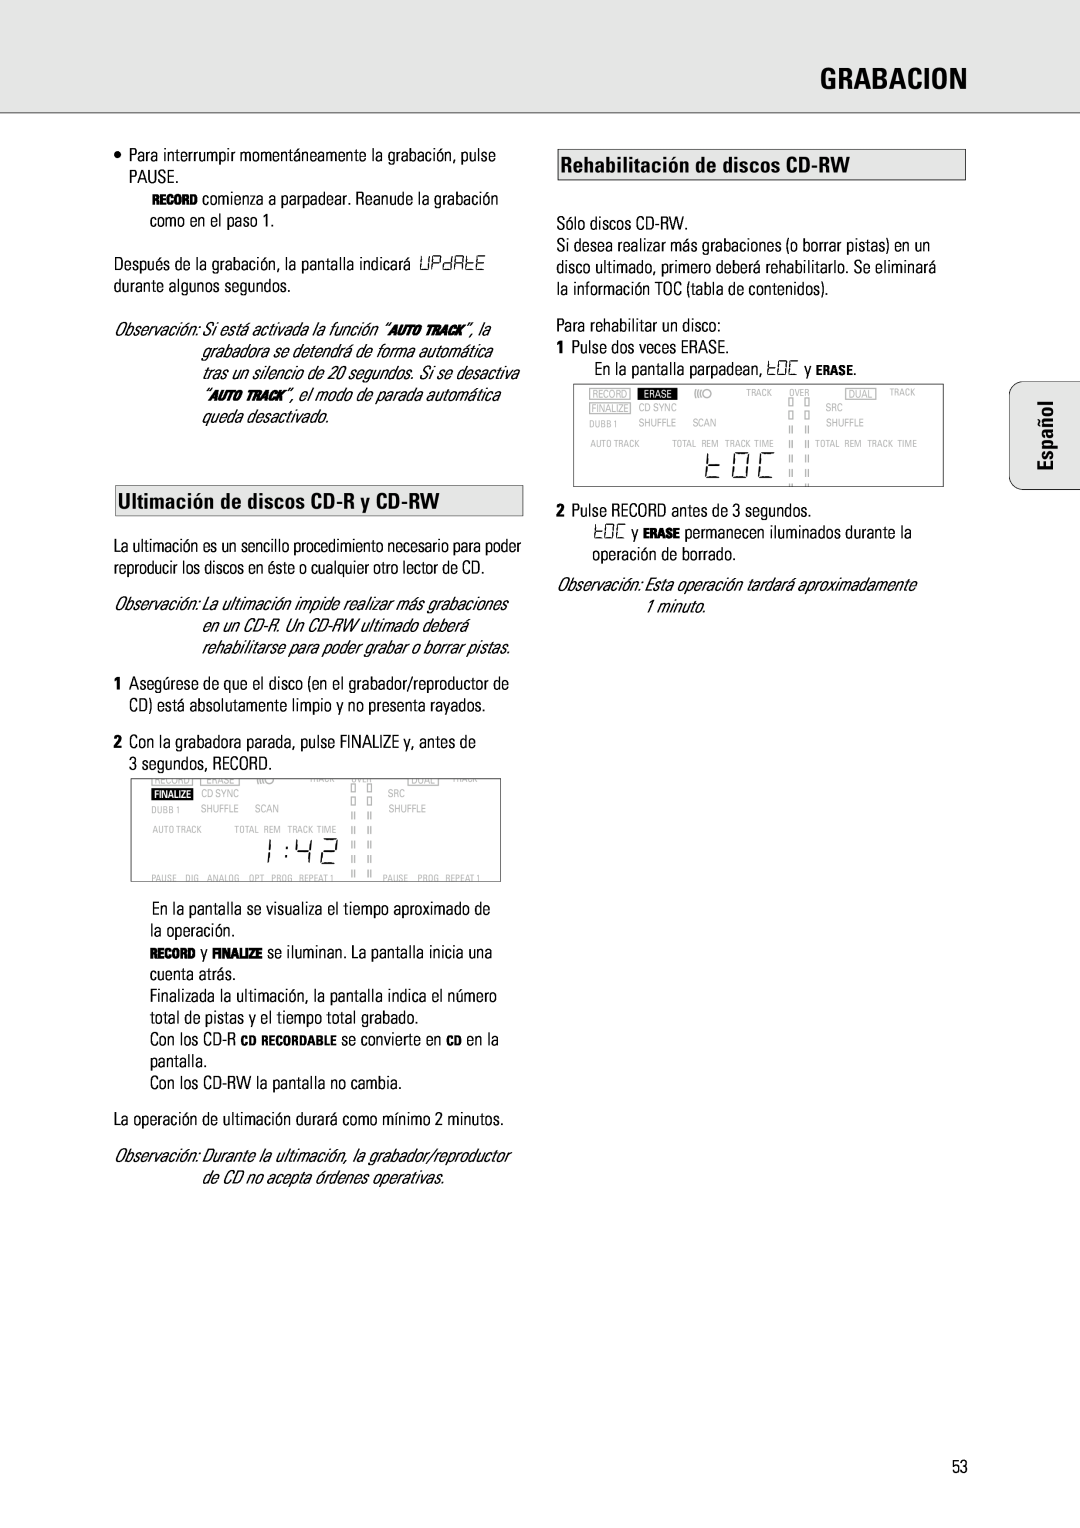 Philips 765 manual Grabacion, Ultimación de discos CD-Ry CD-RW, Rehabilitación de discos CD-RW, Español 